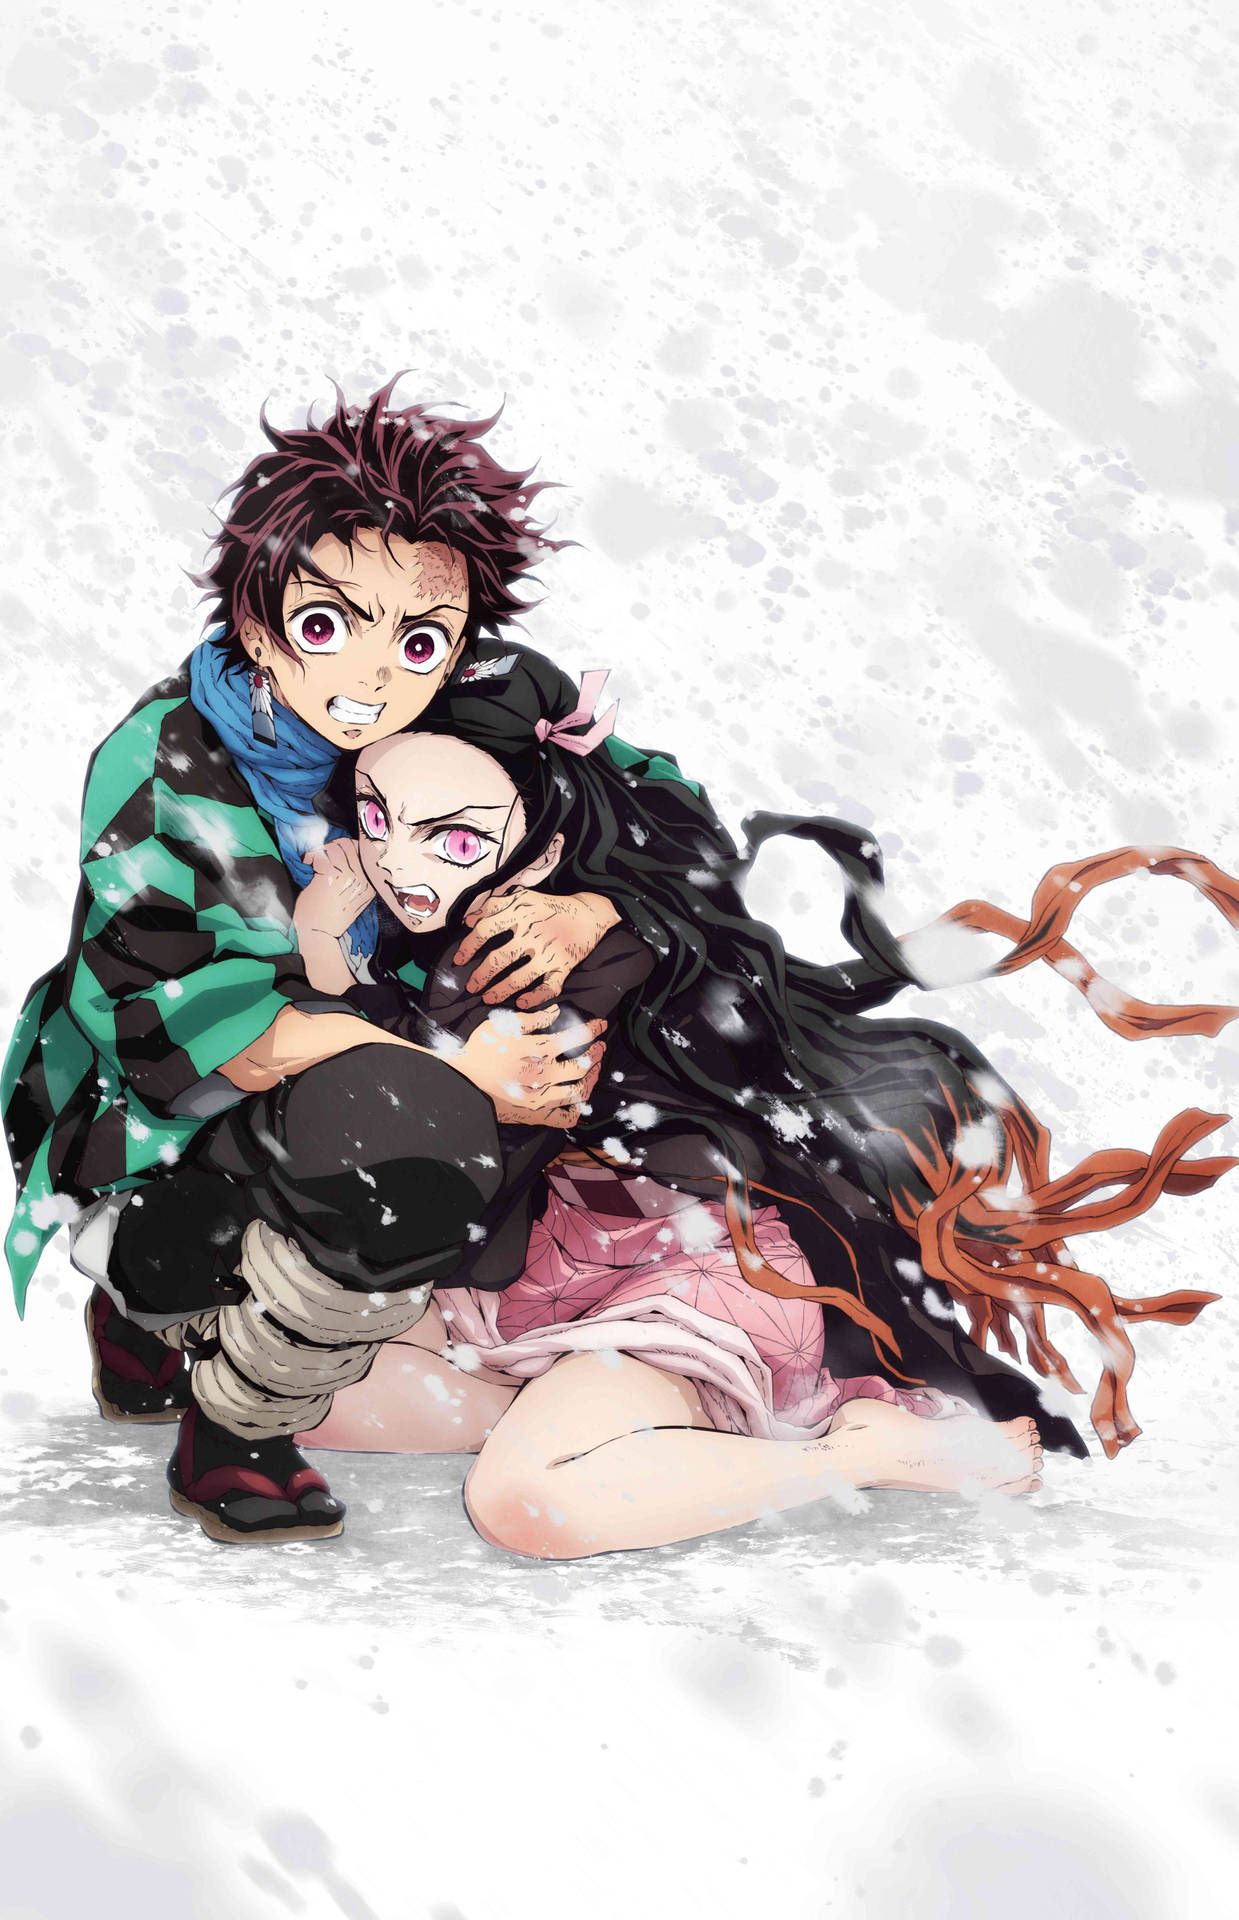 Nezuko and tanjiro kamado in a winter wonderland Wallpaper